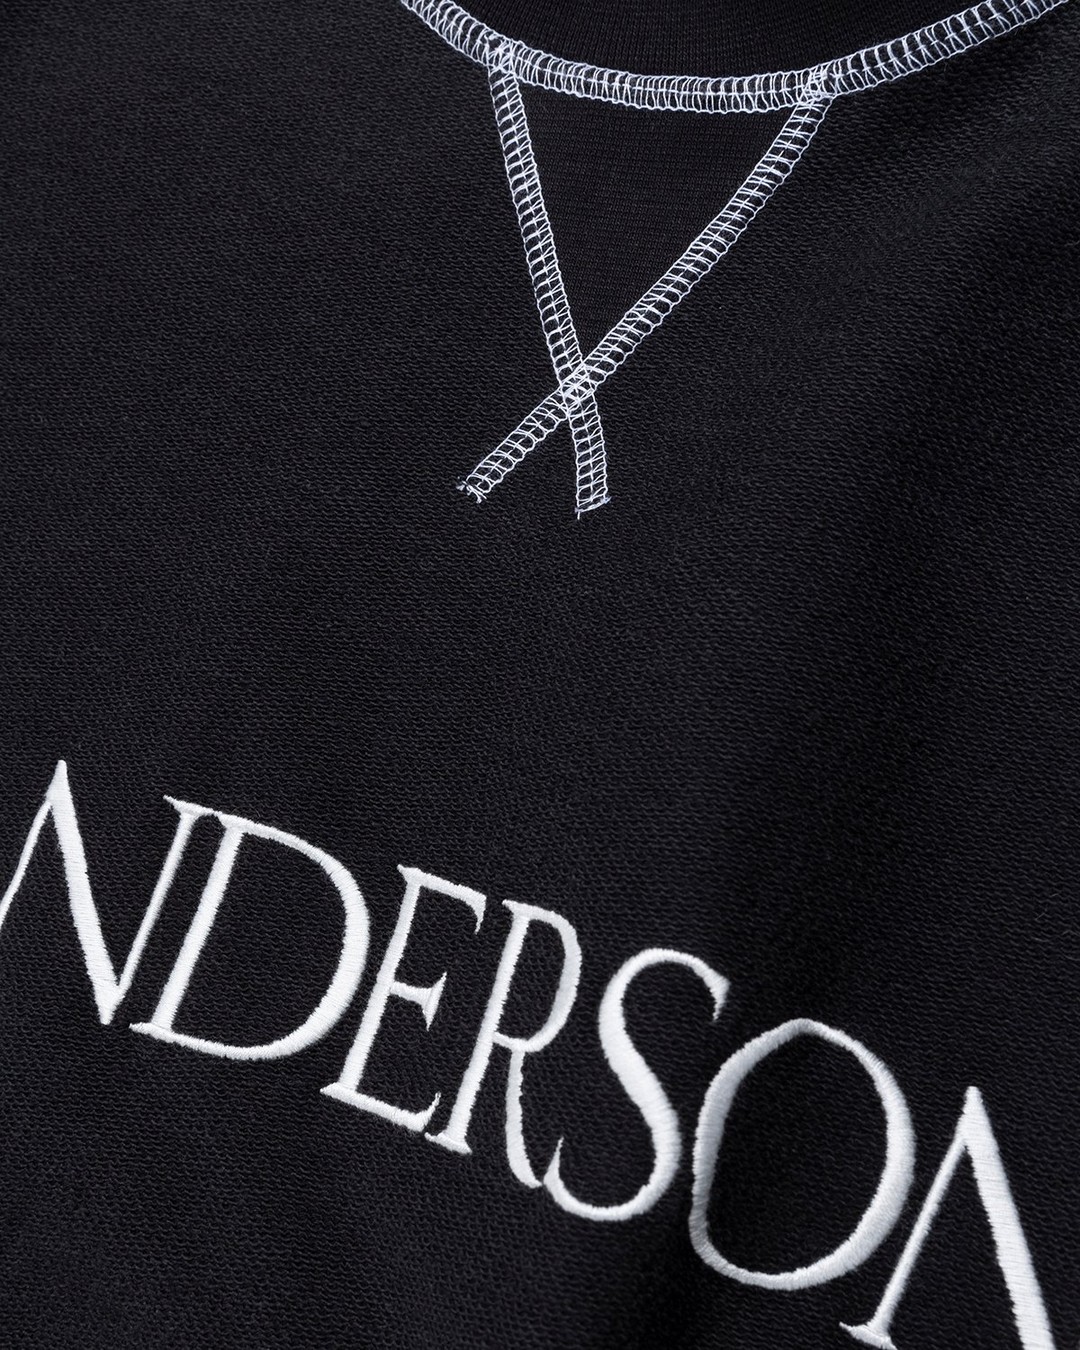 J.W. Anderson – Inside Out Contrast Sweatshirt Black - Sweats - Black - Image 4